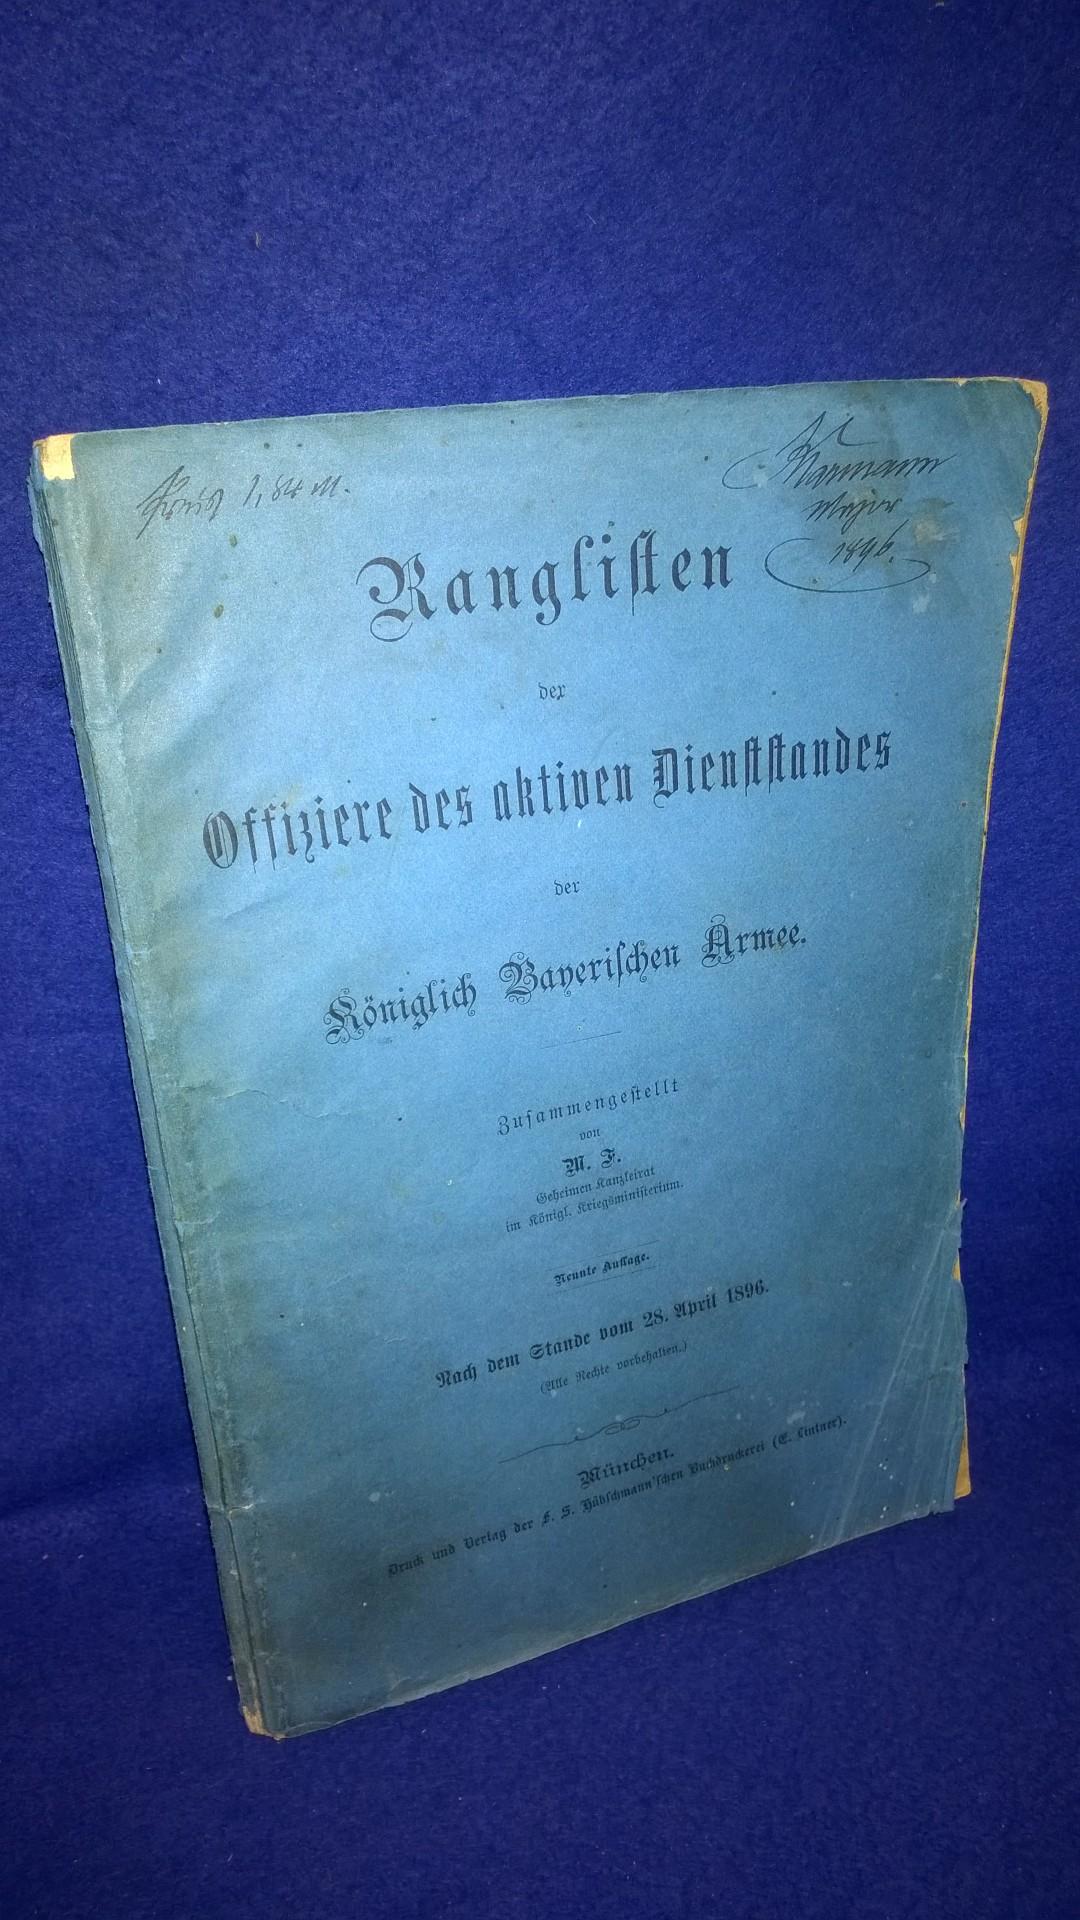 Ranglisten der Offiziere des aktiven Dienststandes der Königlich Bayerischen Armee. Nach dem Stande vom 28.April 1896.